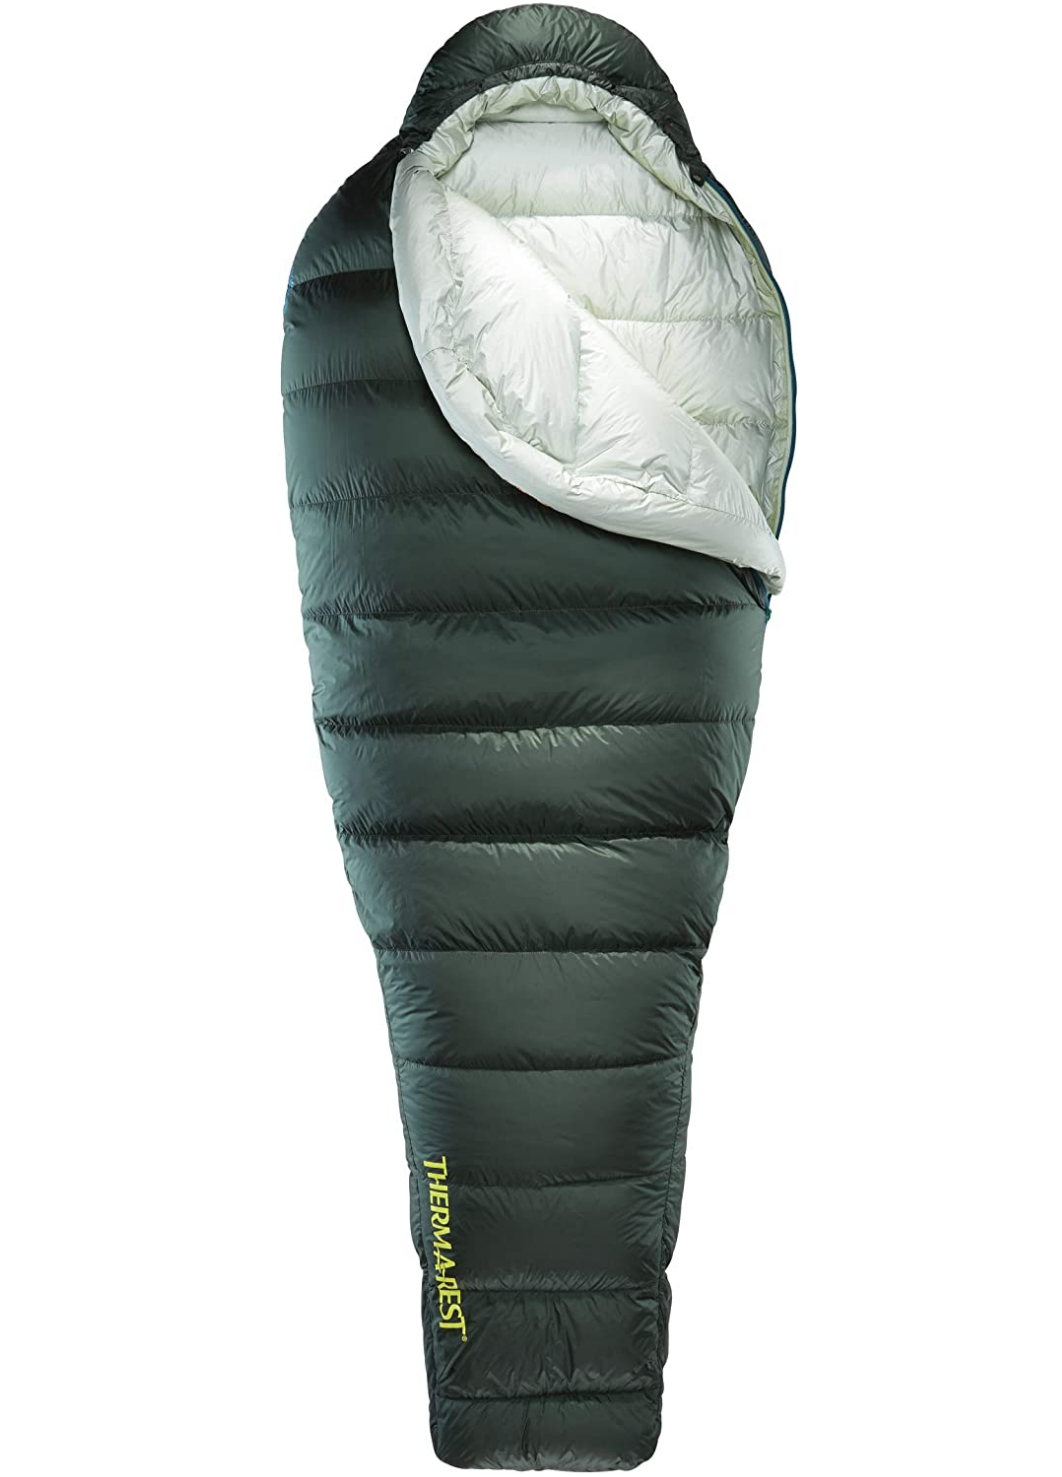 SXFYHXY Mummy Camping Sleeping Bags Humanoid Sleeping Bag Winter Indoor Outdoor Portable Ultralight Warm Adult Windproof Sleeping Bag